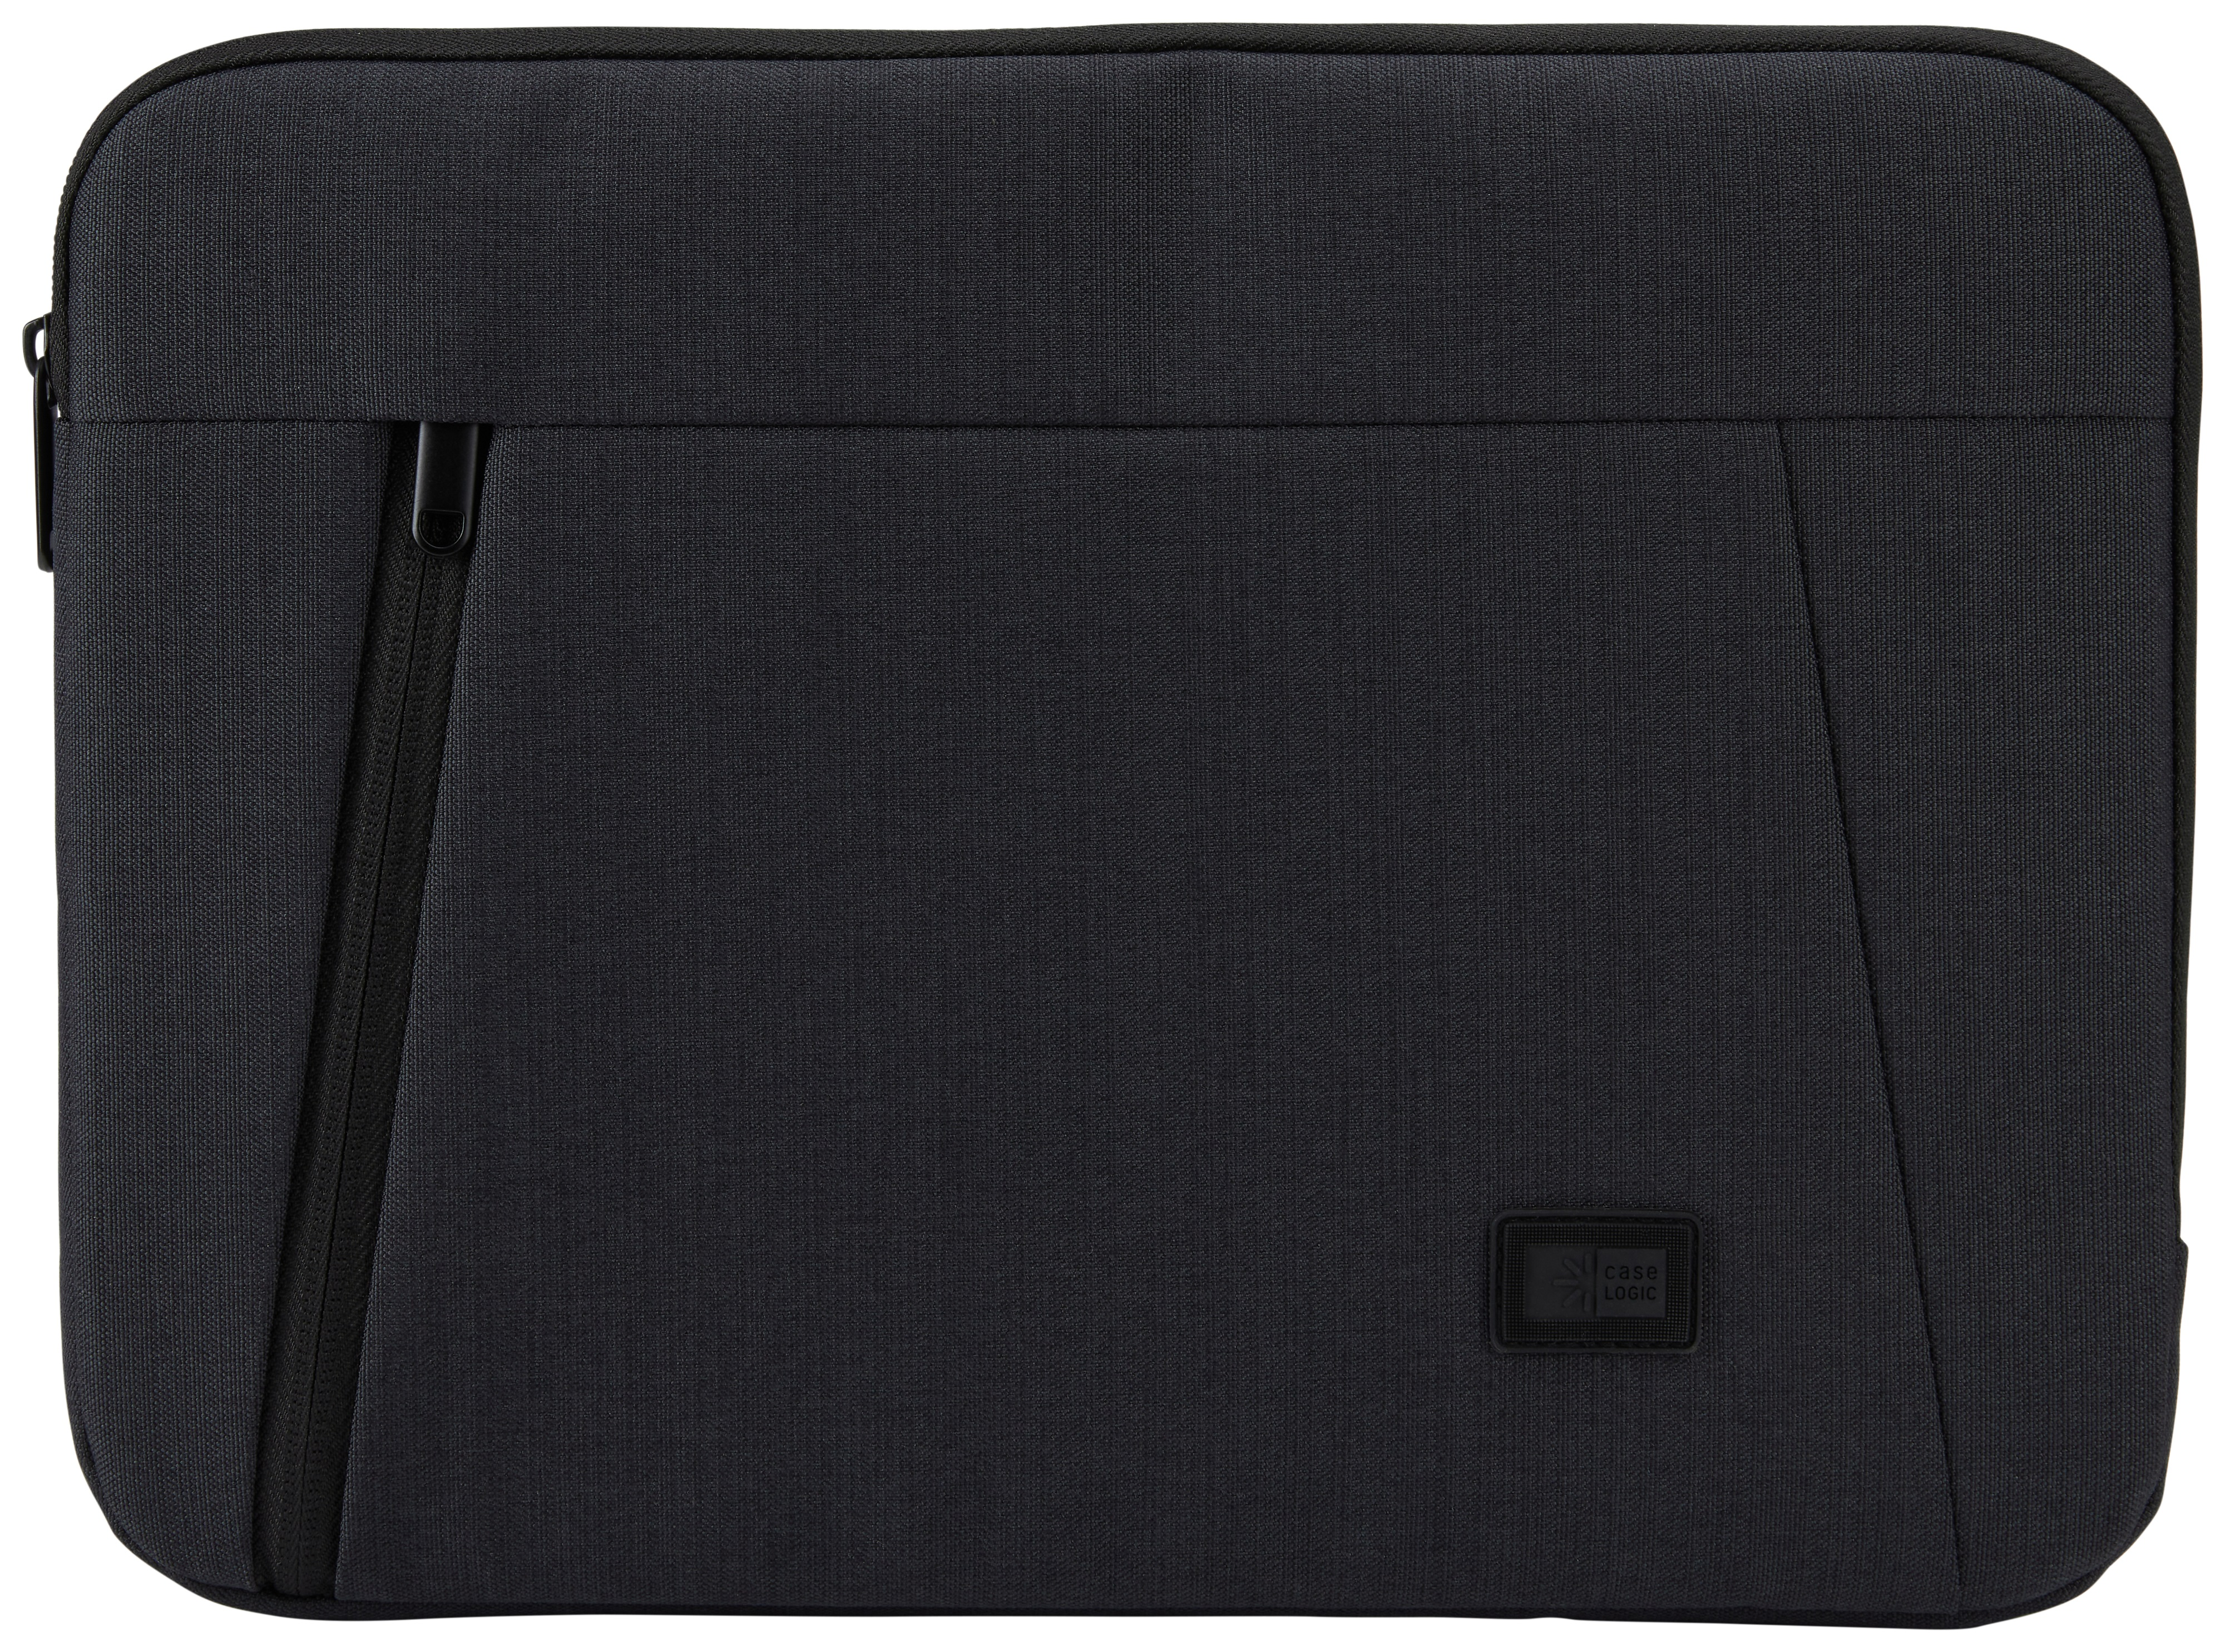 CASE LOGIC Huxton Notebooksleeve Sleeve Universal Polyester, Schwarz für